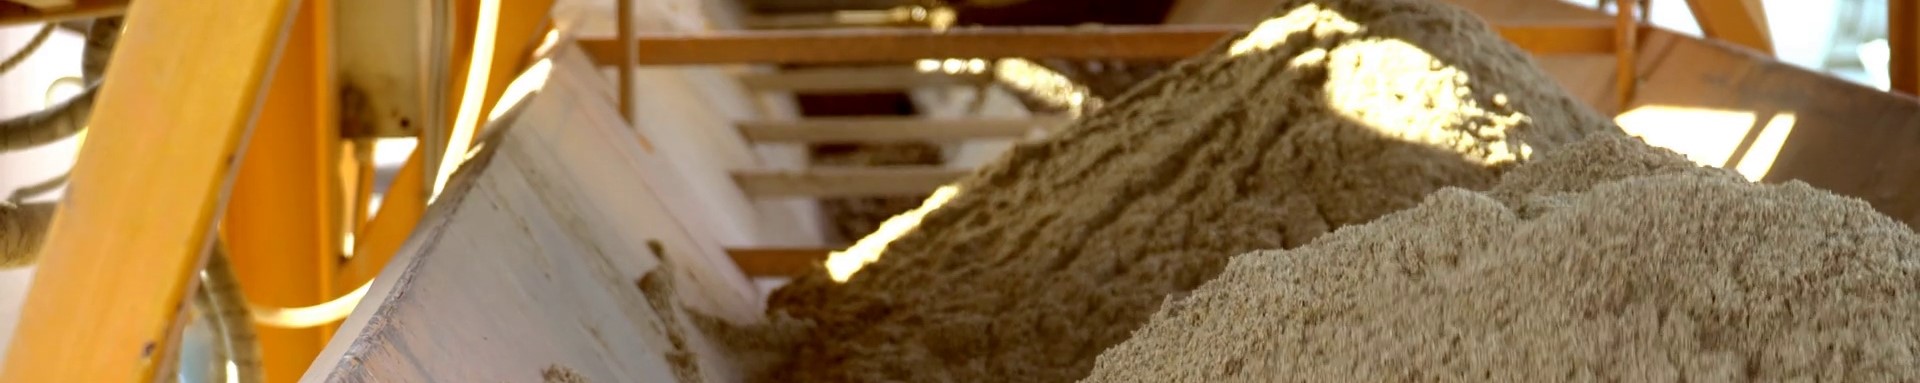 Песок для бетона где купить как рассчитать количество - Лисий Нос